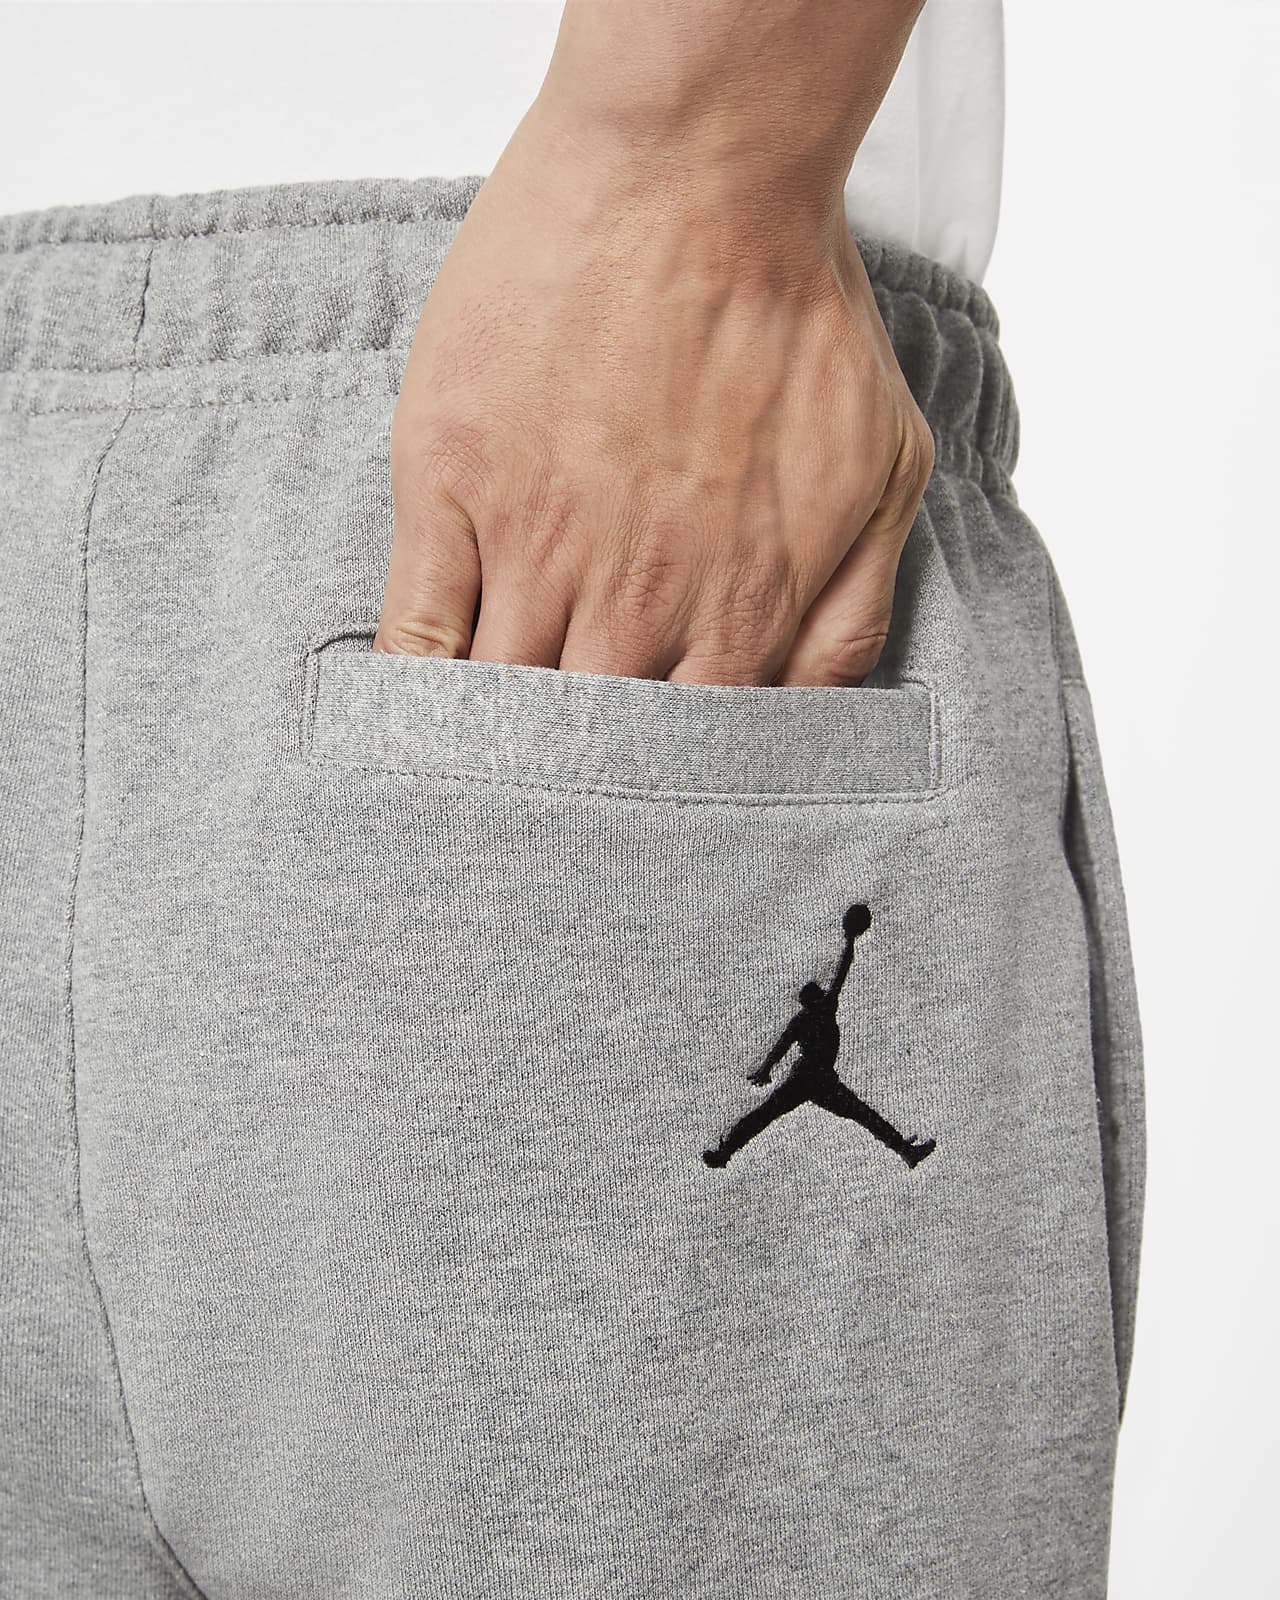 Nike Air Jordan Jumpman Classics Fleece Men's Pants Black ck2850